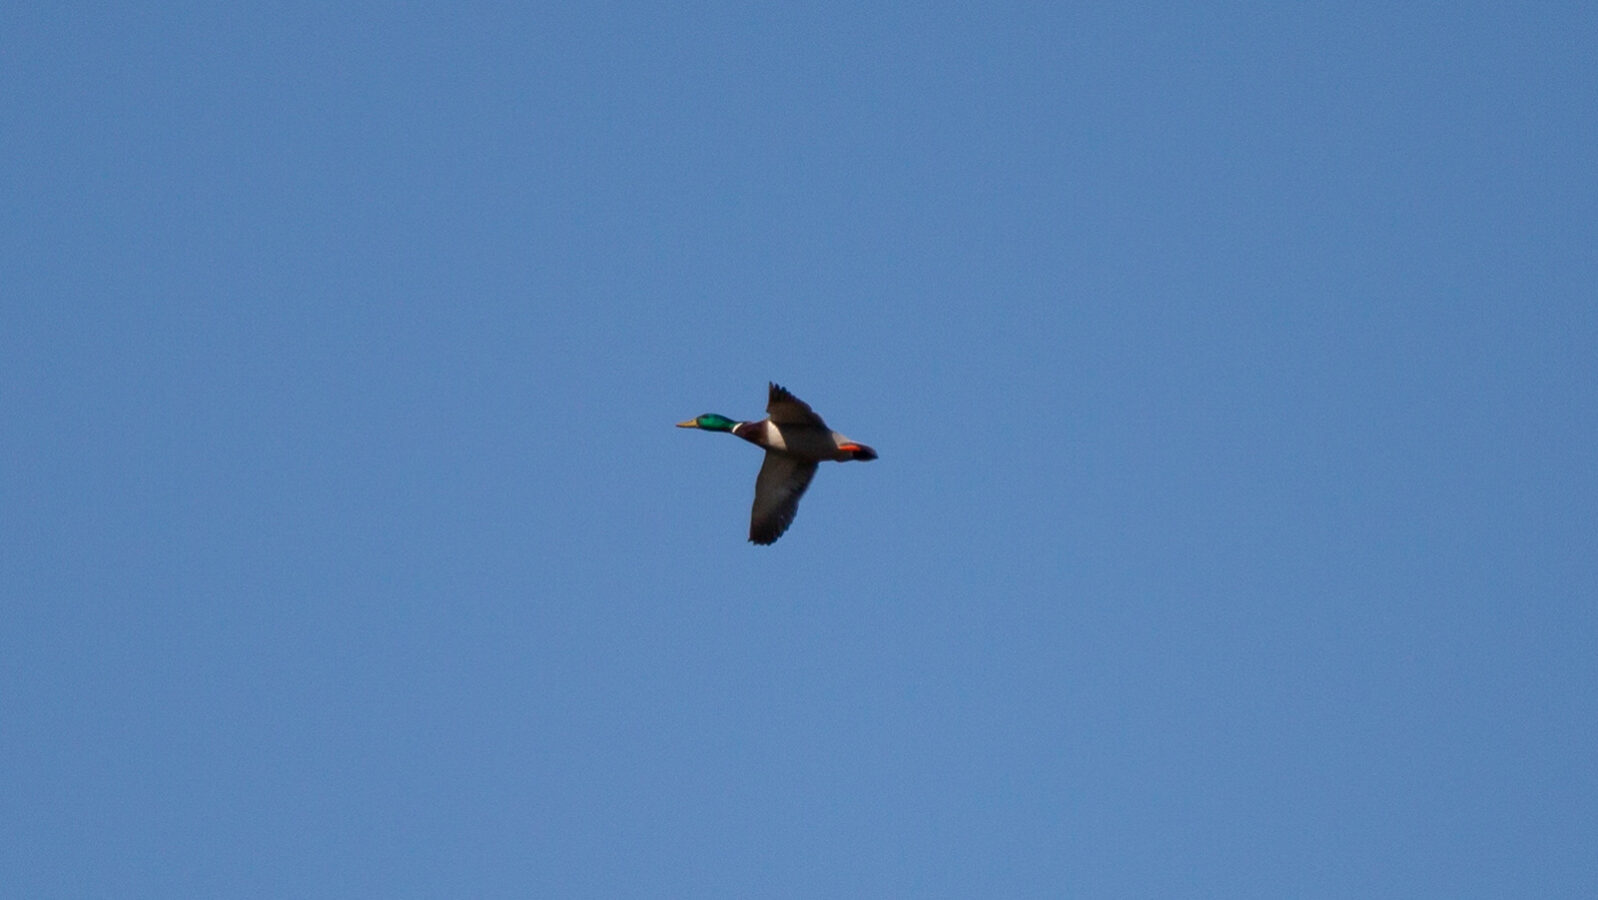 Mallard duck flying through blue sky